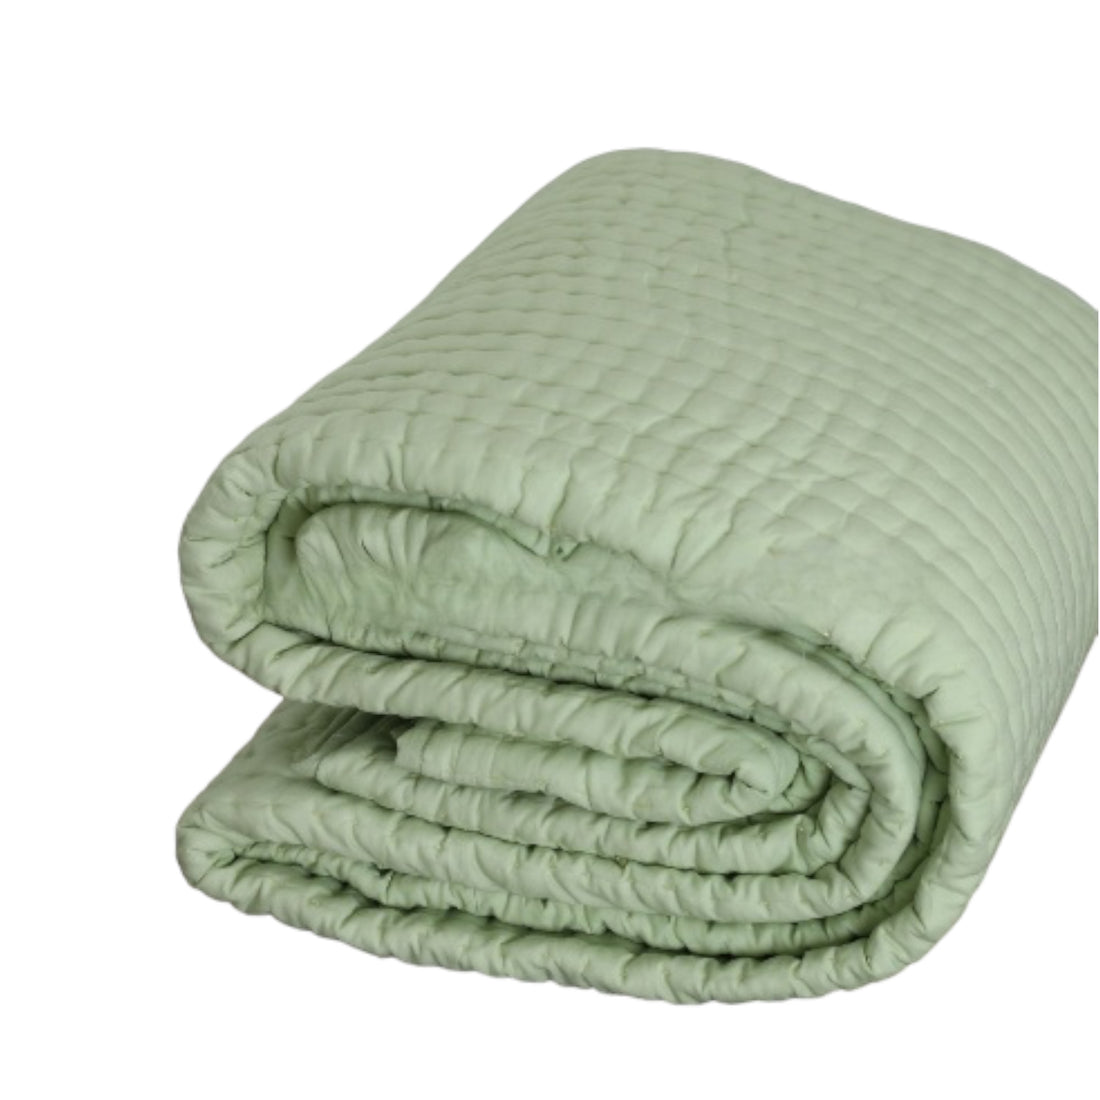 Cotton Solid Color Kantha Blanket